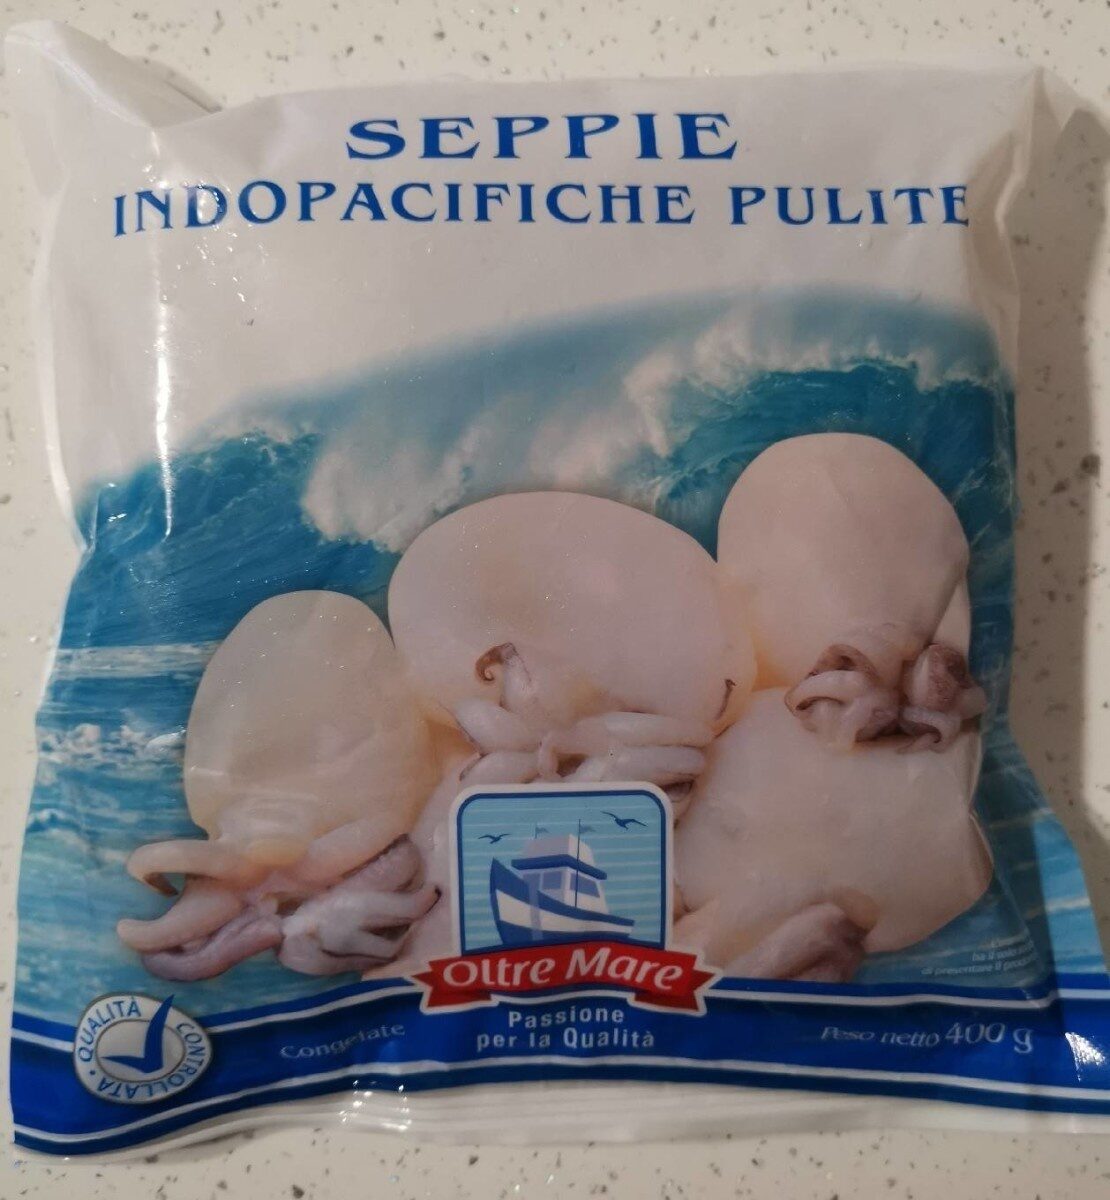 Seppie Indopacifiche pulite - Prodotto - it